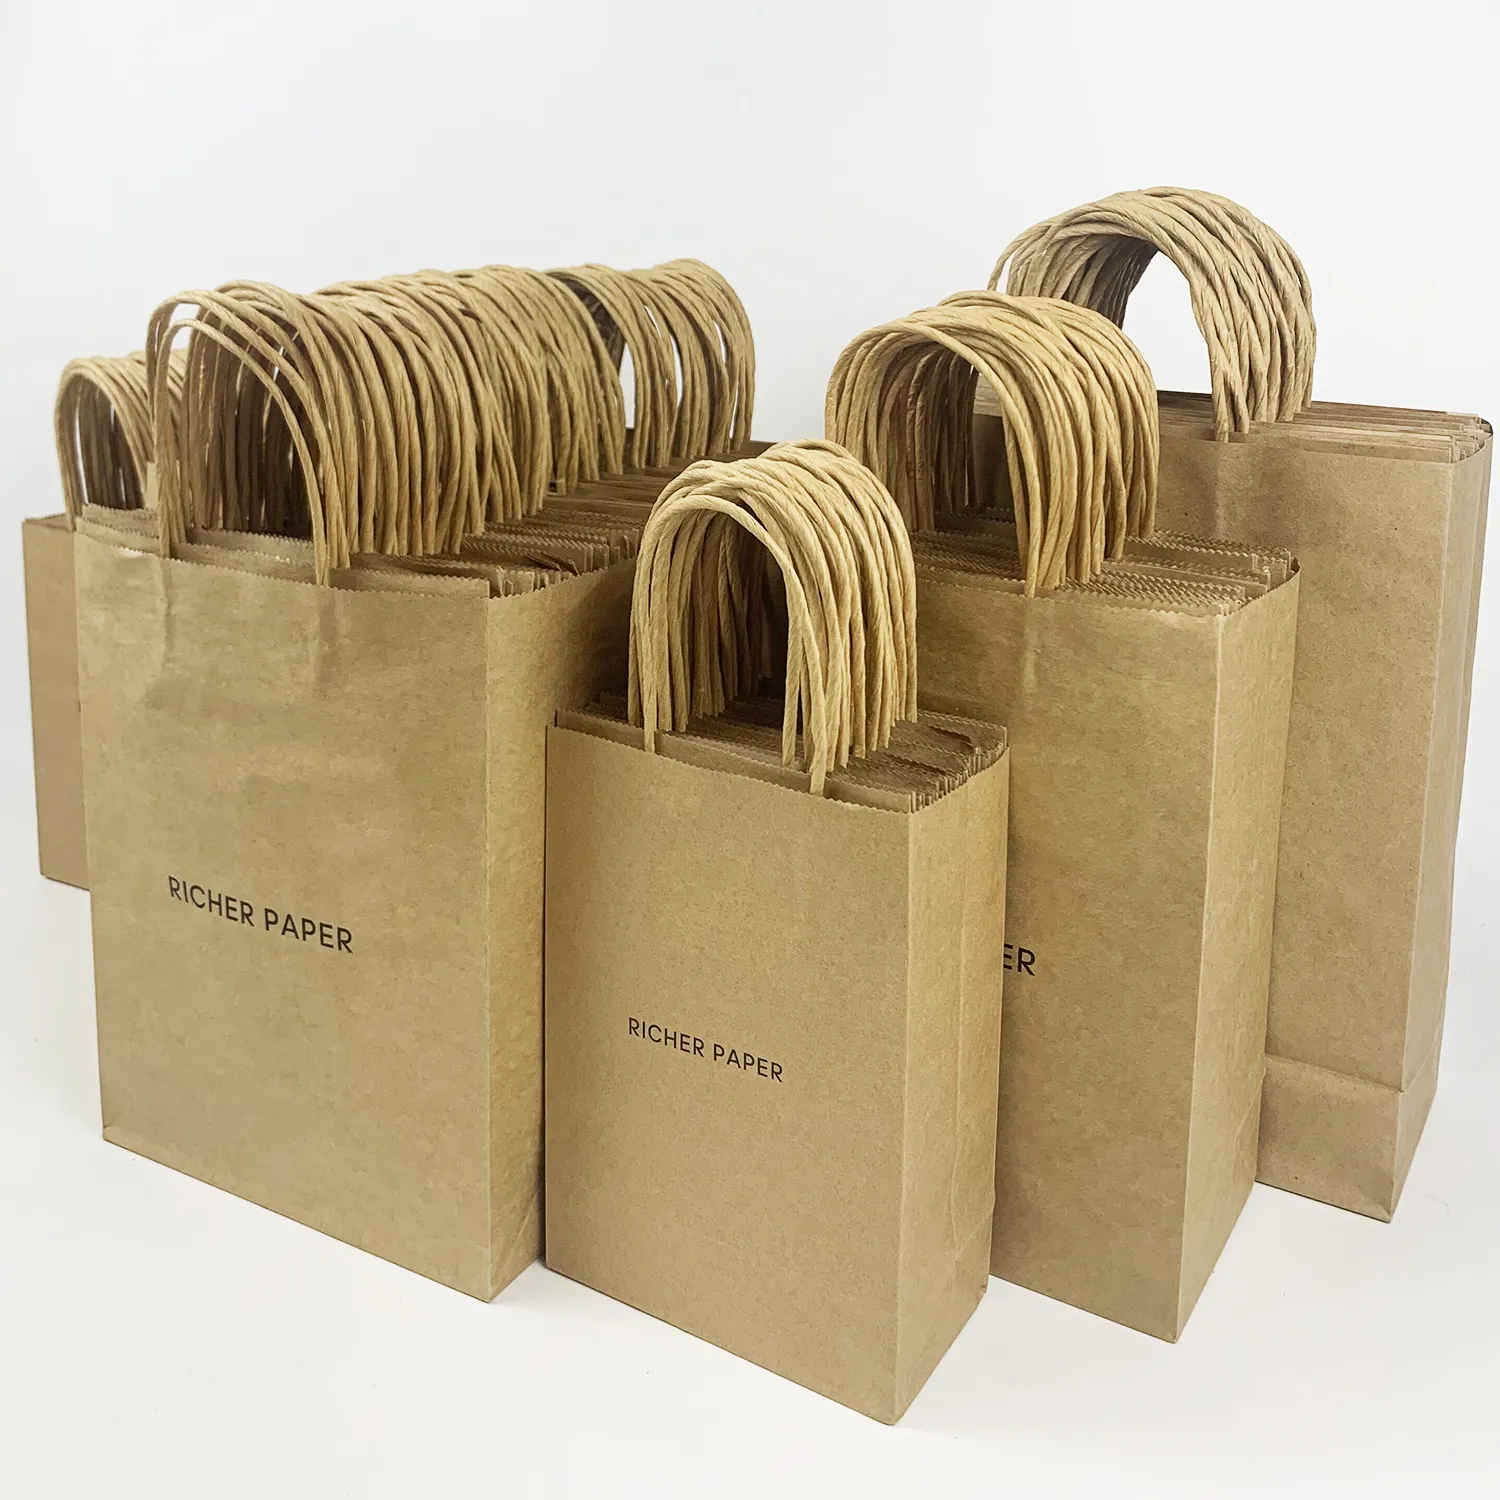 कस्टम मुद्रित लोगो के साथ टिकाऊ ब्राउन क्राफ्ट पेपर बैग और हैंडल के साथ खाद्य पैकेज के लिए आकार